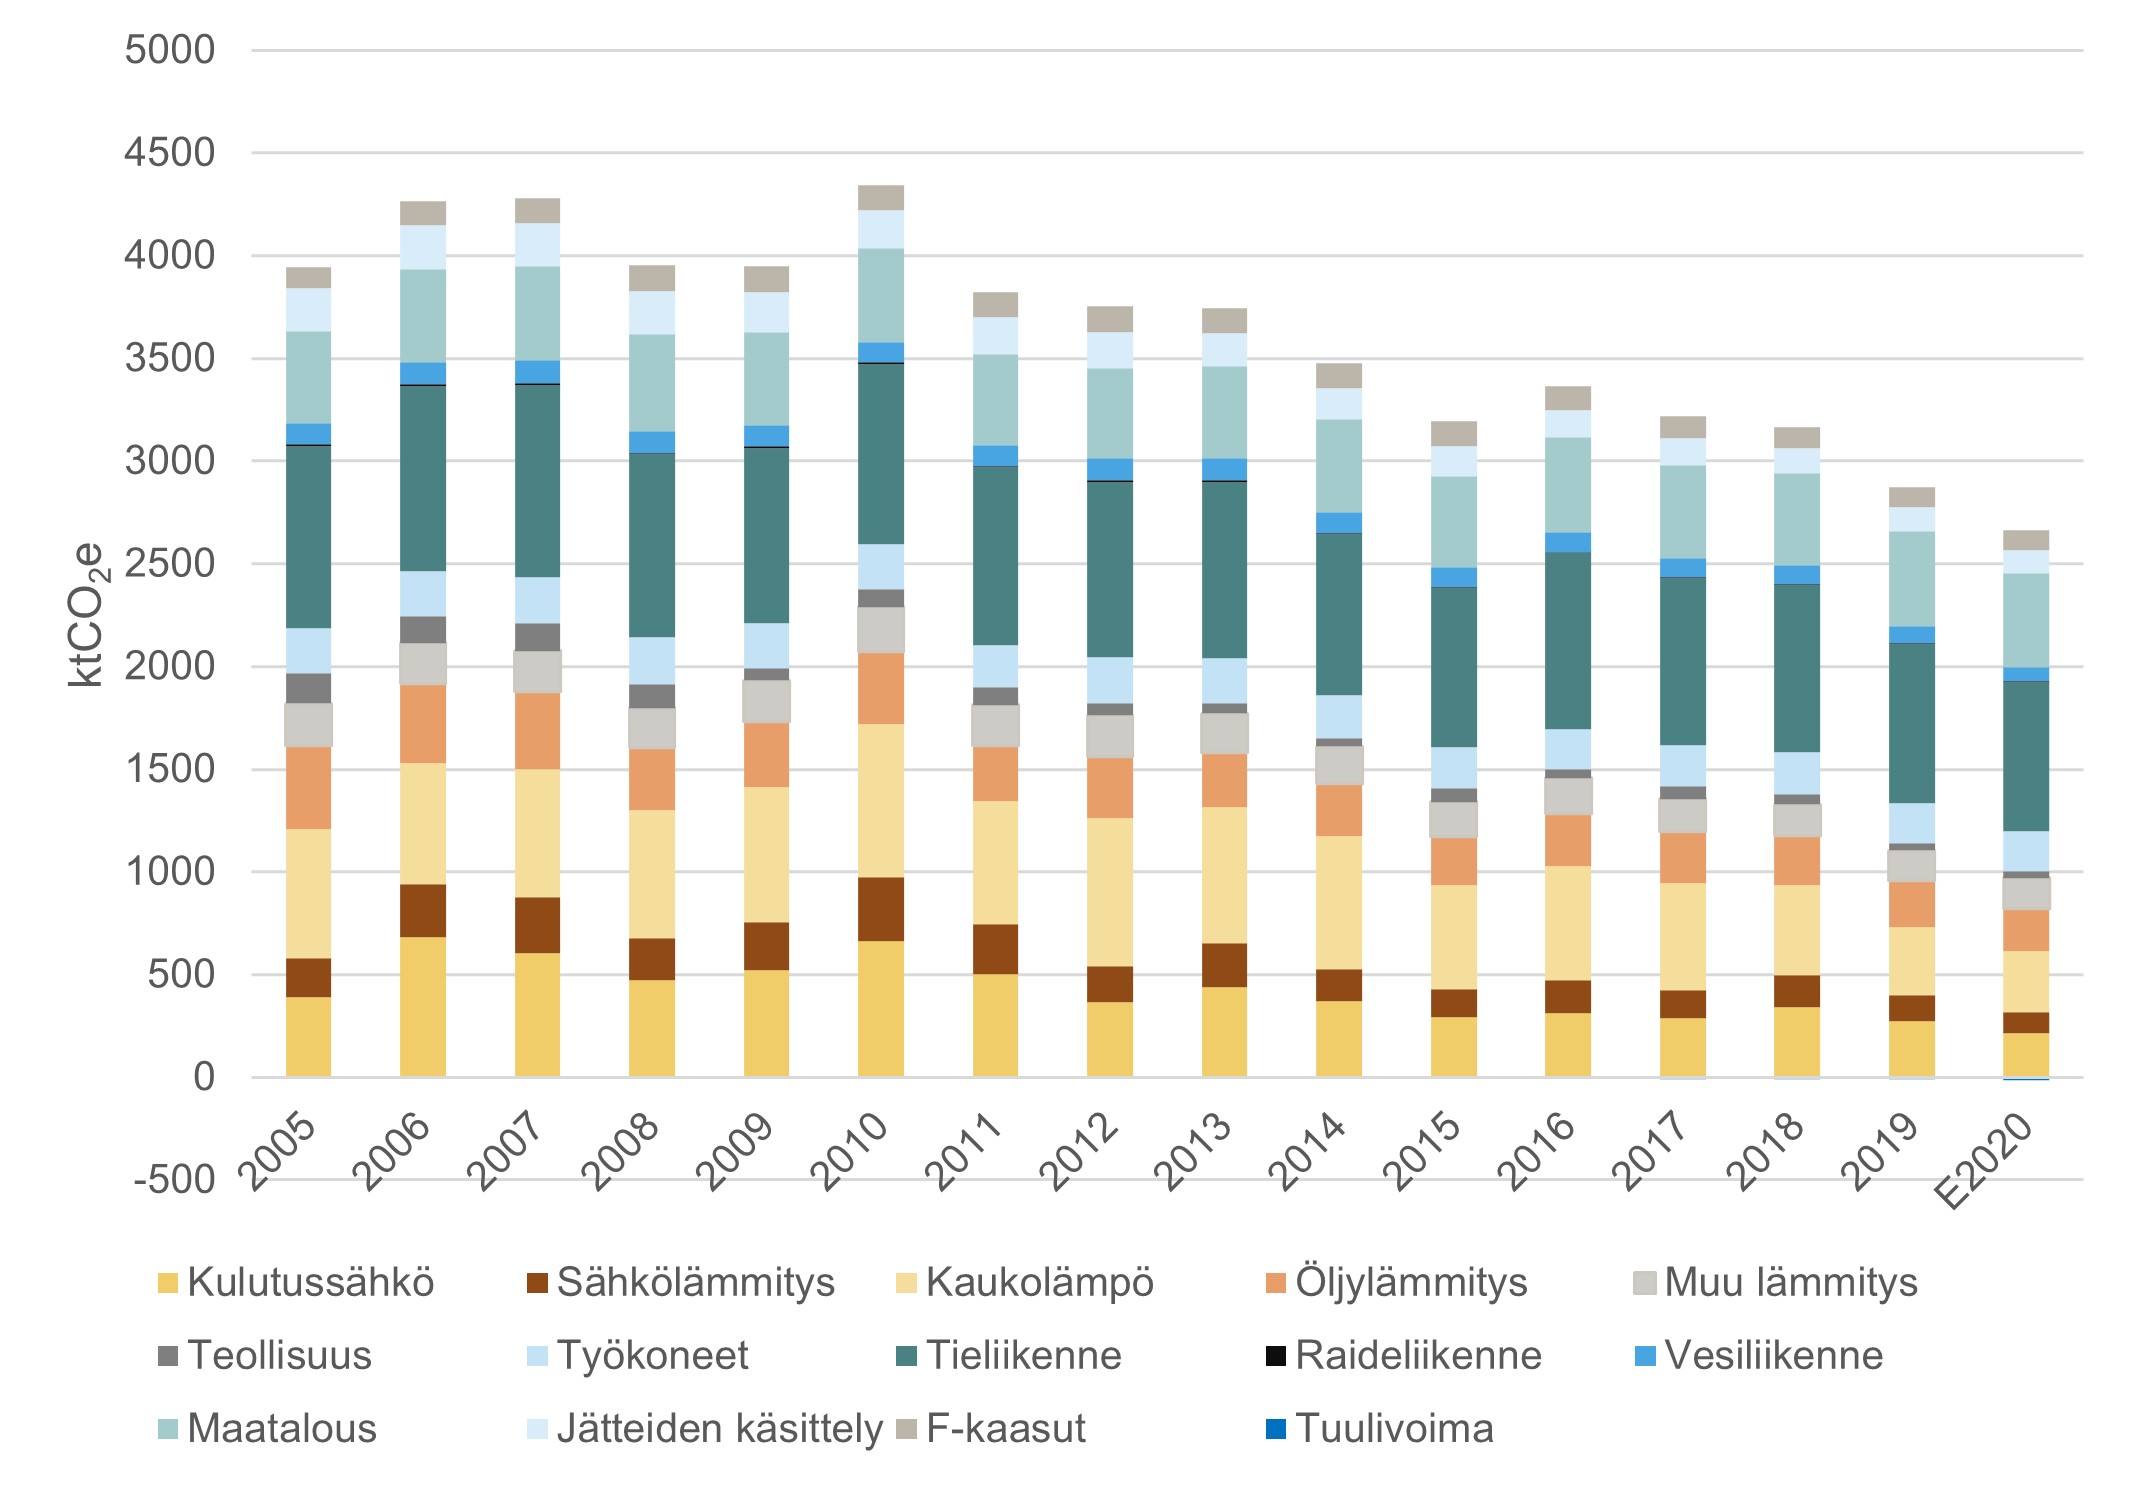 Pylväskuvaaja Varsinais-Suomen ilmastopäästöjen kehityksestä 2005-2020